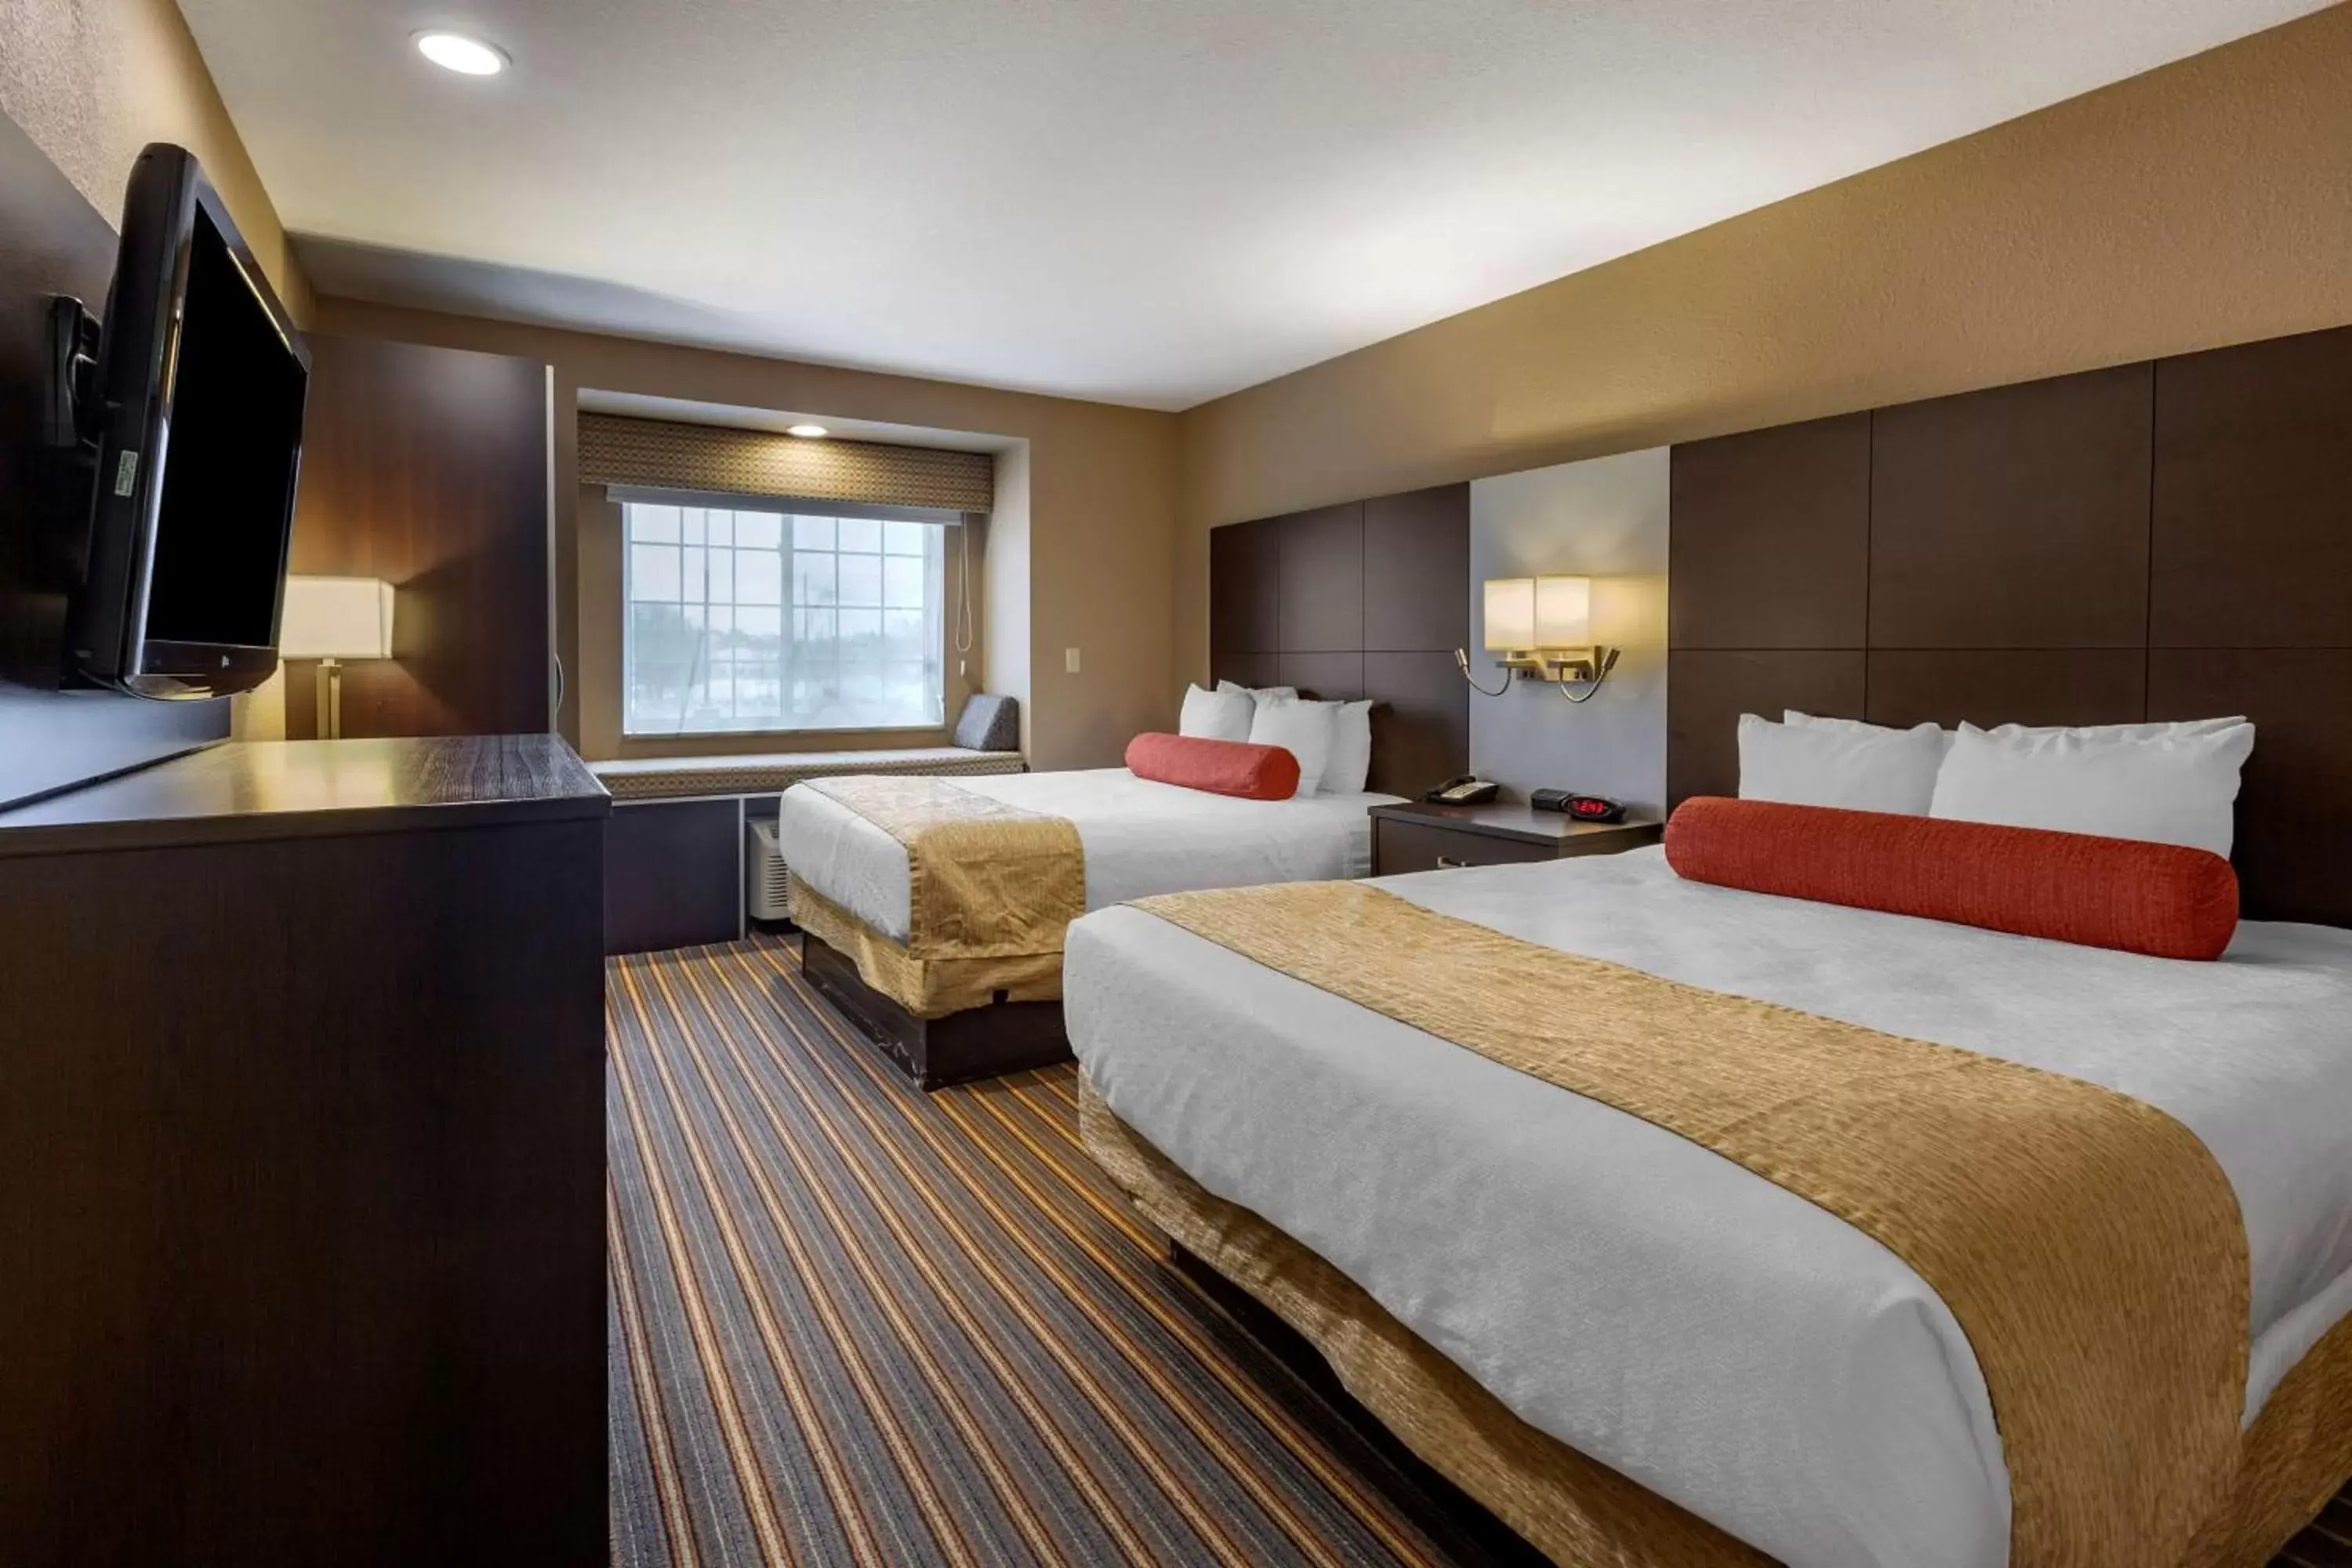 Bedroom, Bed in Best Western Plus Woodstock Inn & Suites